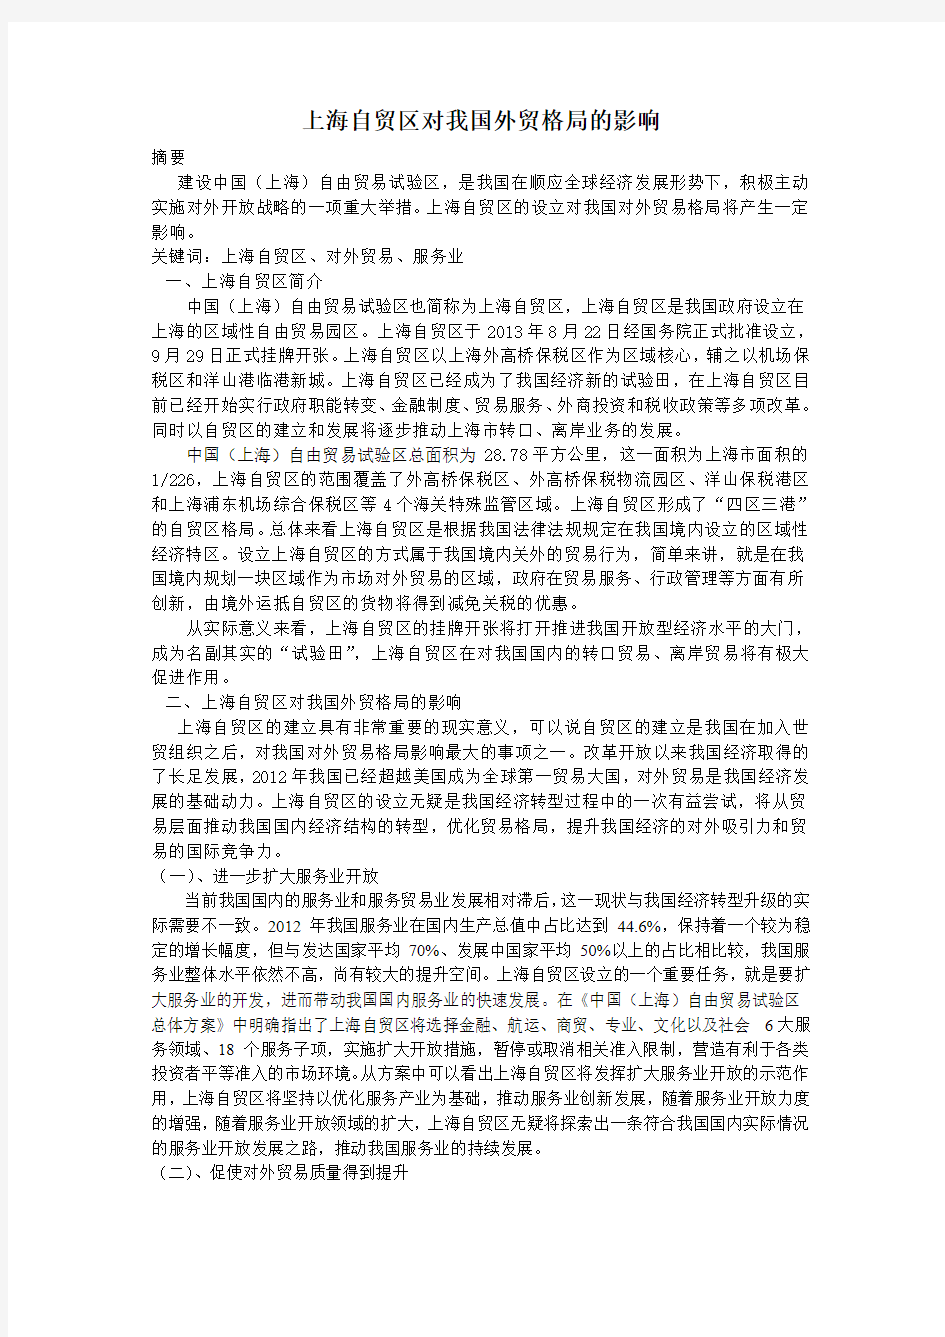 上海自贸区对我国外贸格局的影响